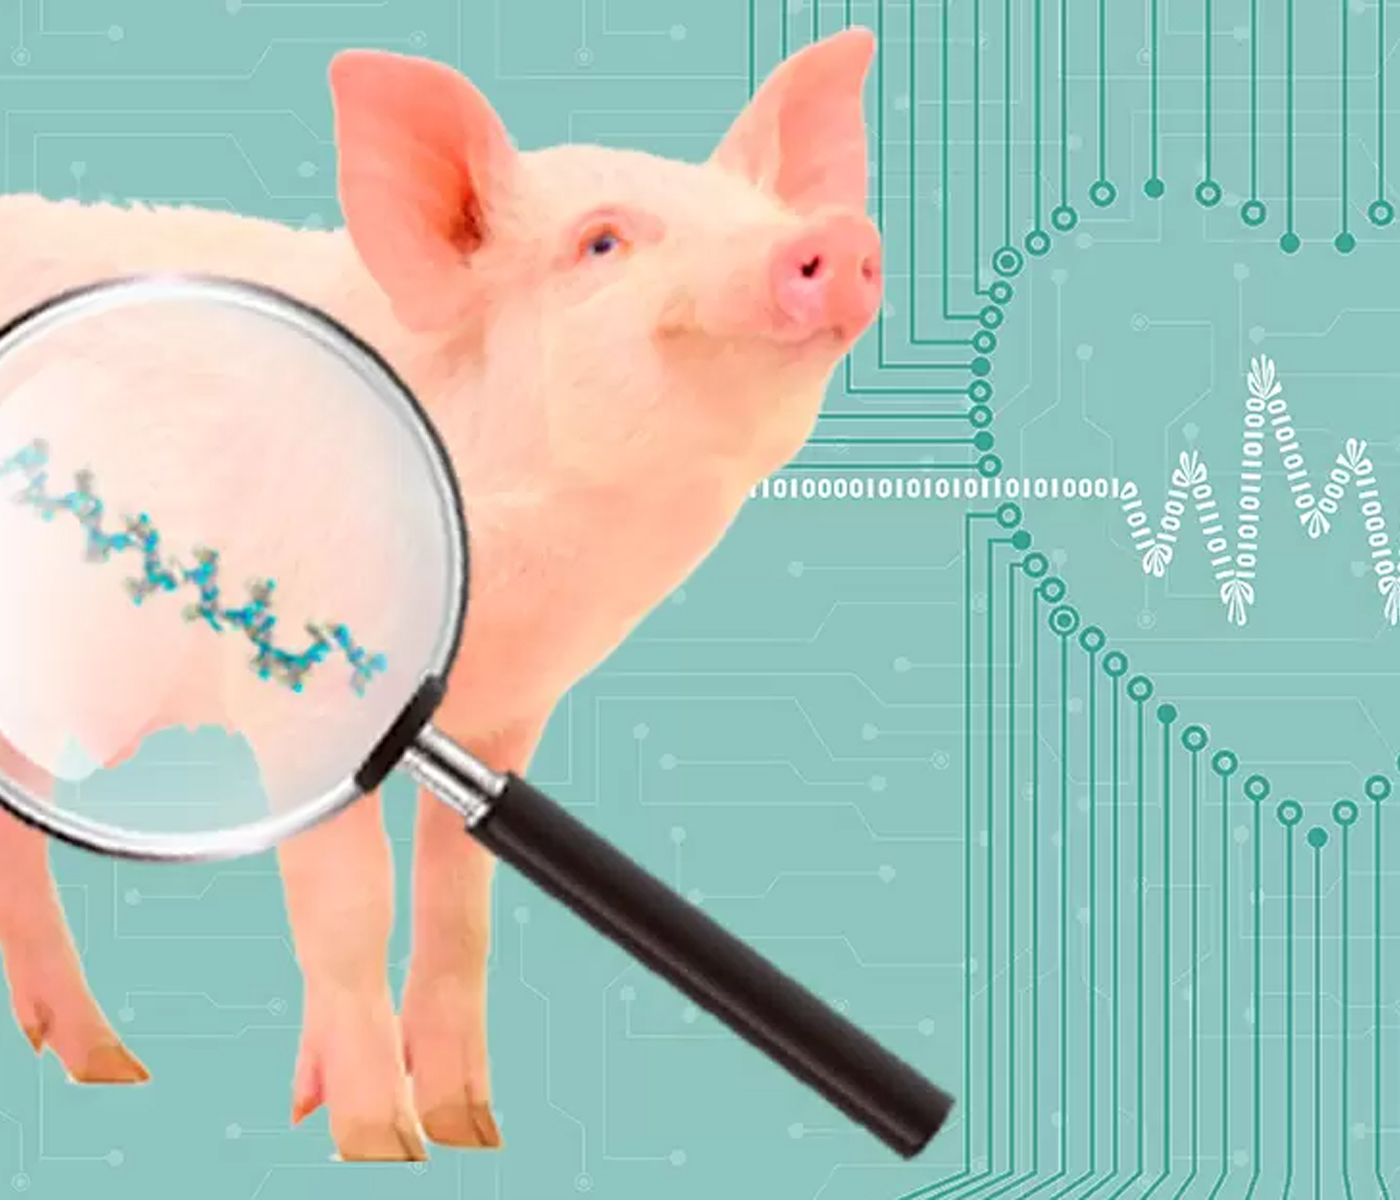 MicroARNs como biomarcadores de salud y bienestar animal en cerdos